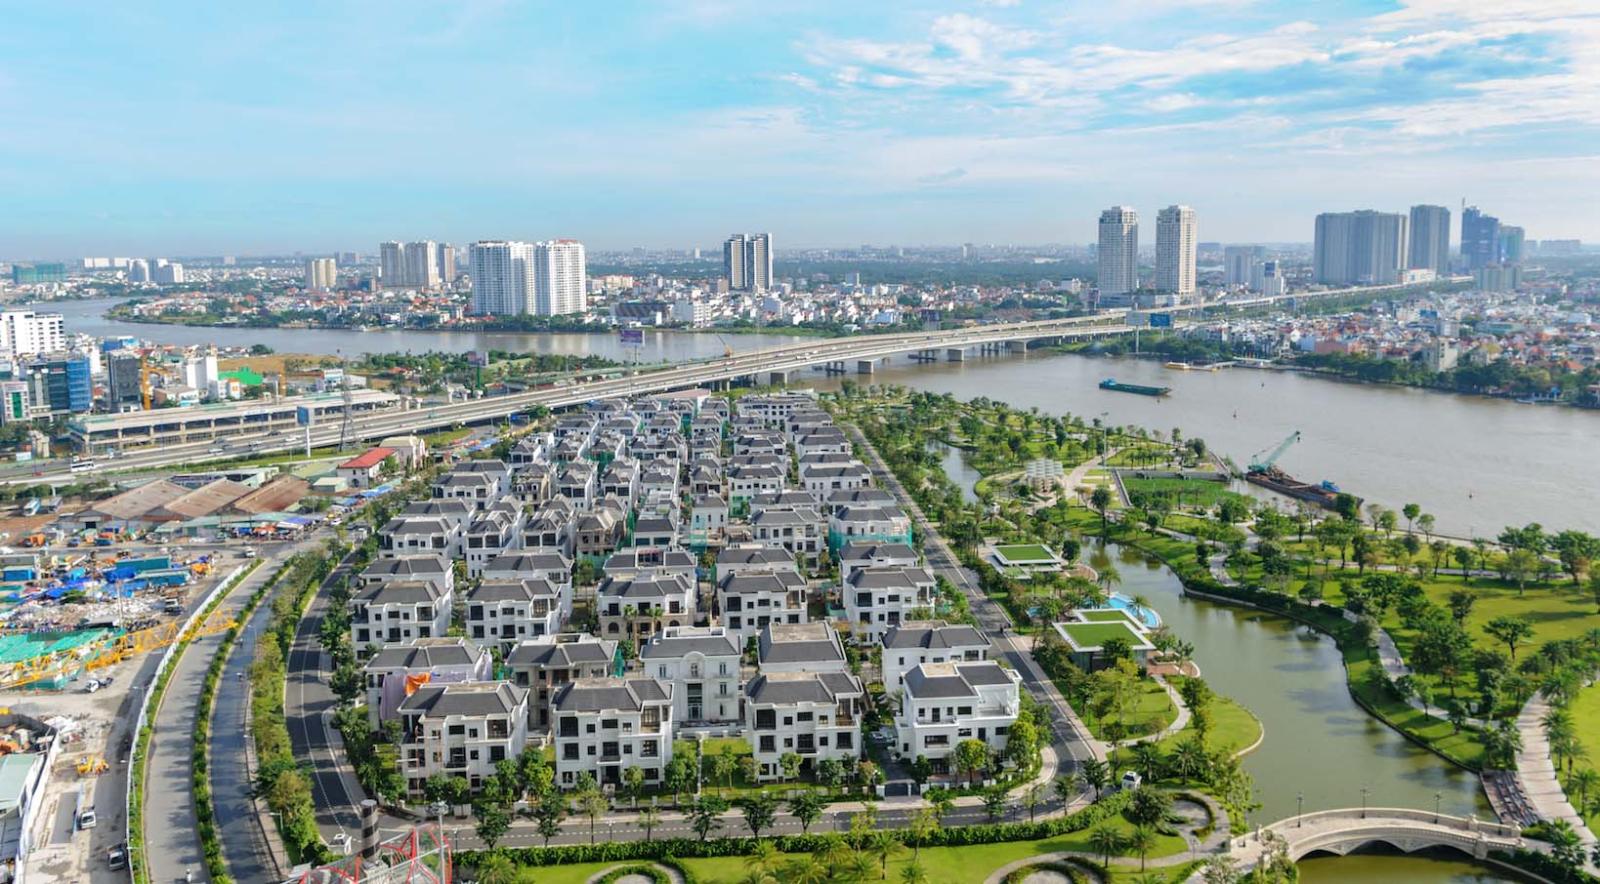 Bán gấp giá rẻ biệt thự góc 2 mặt tiền Vinhomes central park Vip nhất nhì Sài Gòn, DT 309m nhà nội thất cao cấp 4*